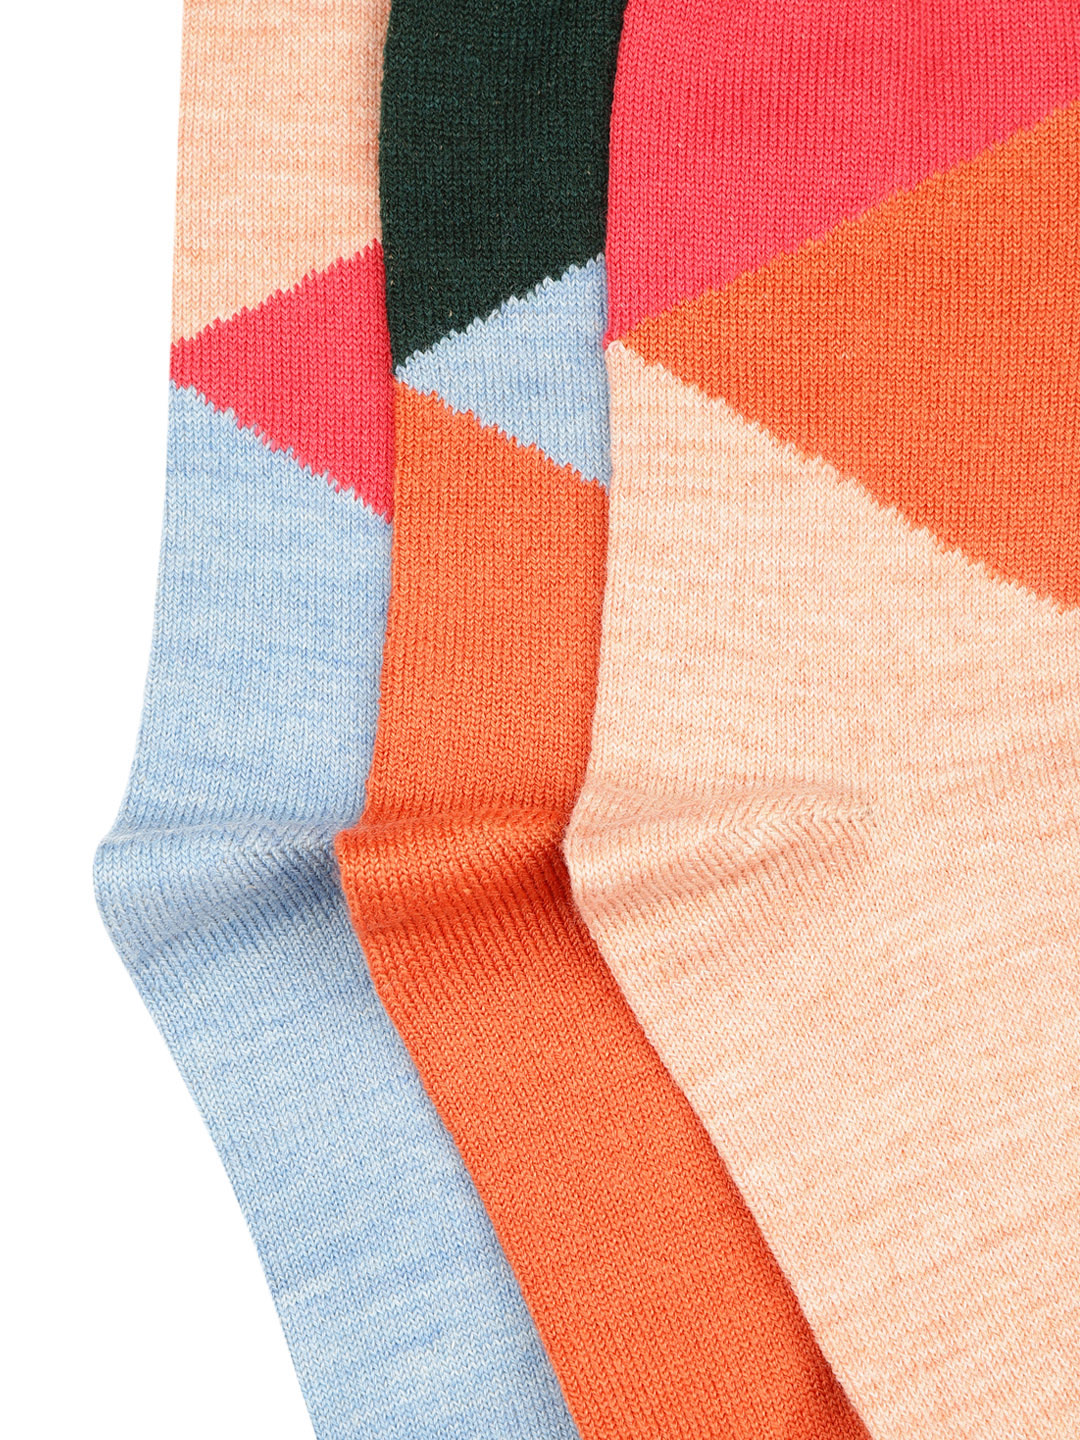 Wool Blend Colour blocked Socks Pack of 3| Women